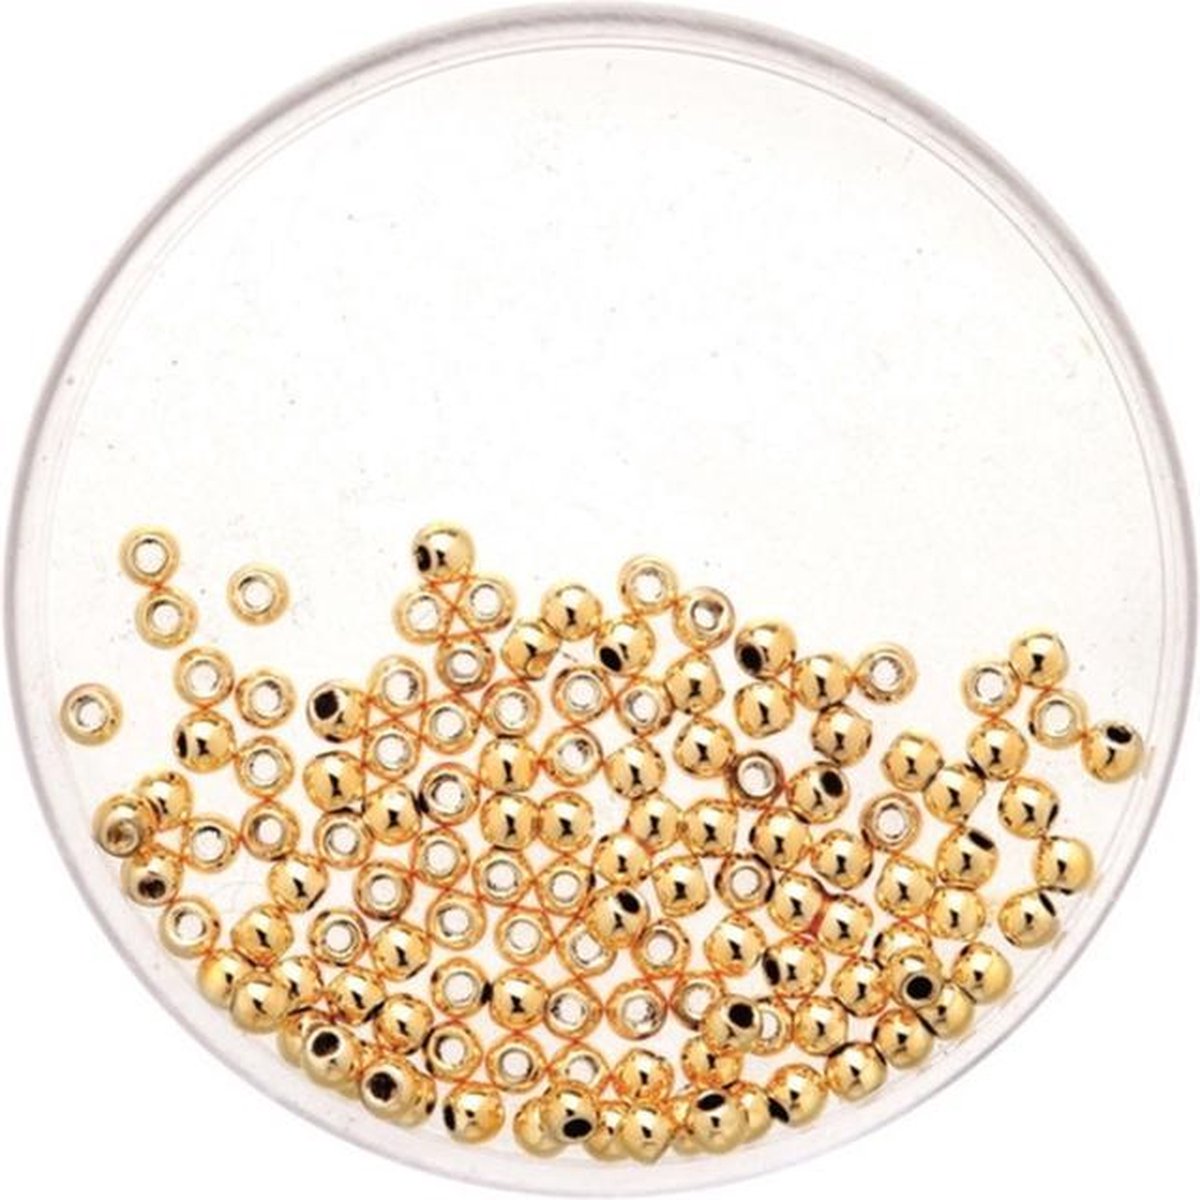 10x stuks metallic sieraden maken kralen in het goud van 10 mm - Kunststof waskralen voor armbandje/kettingen